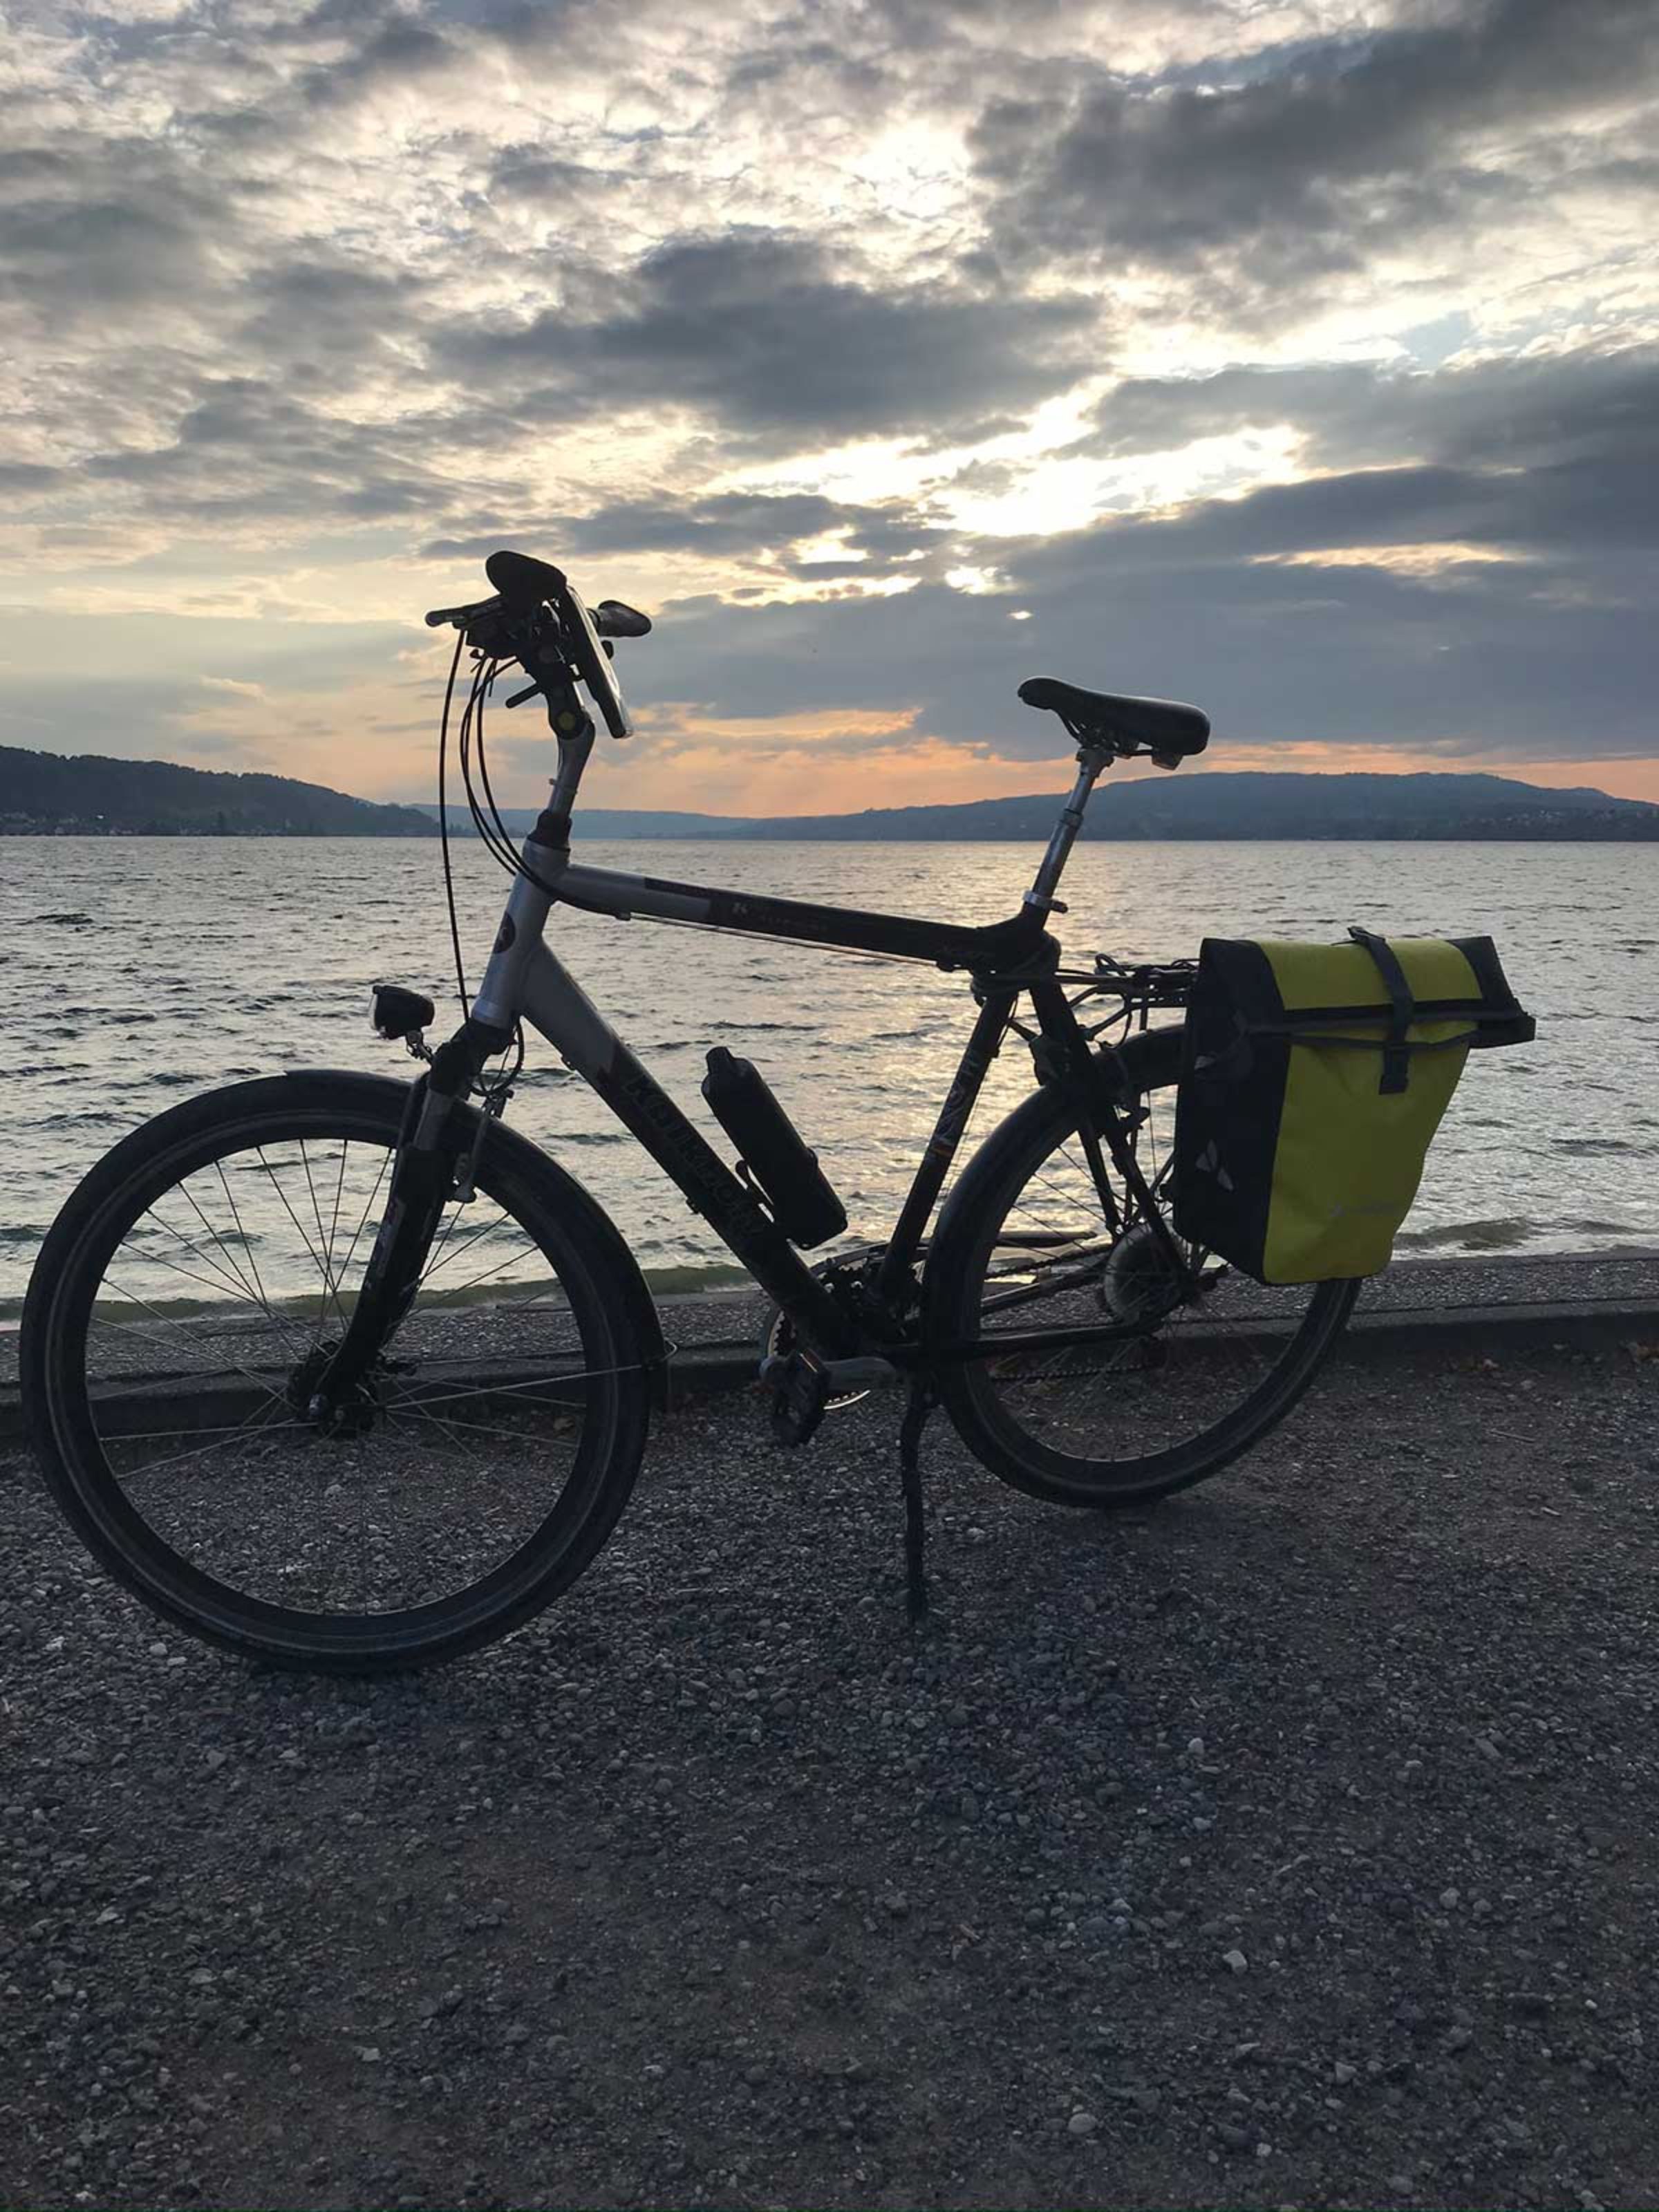 Am Ende einer wunderschönen Radtour am Bodensee